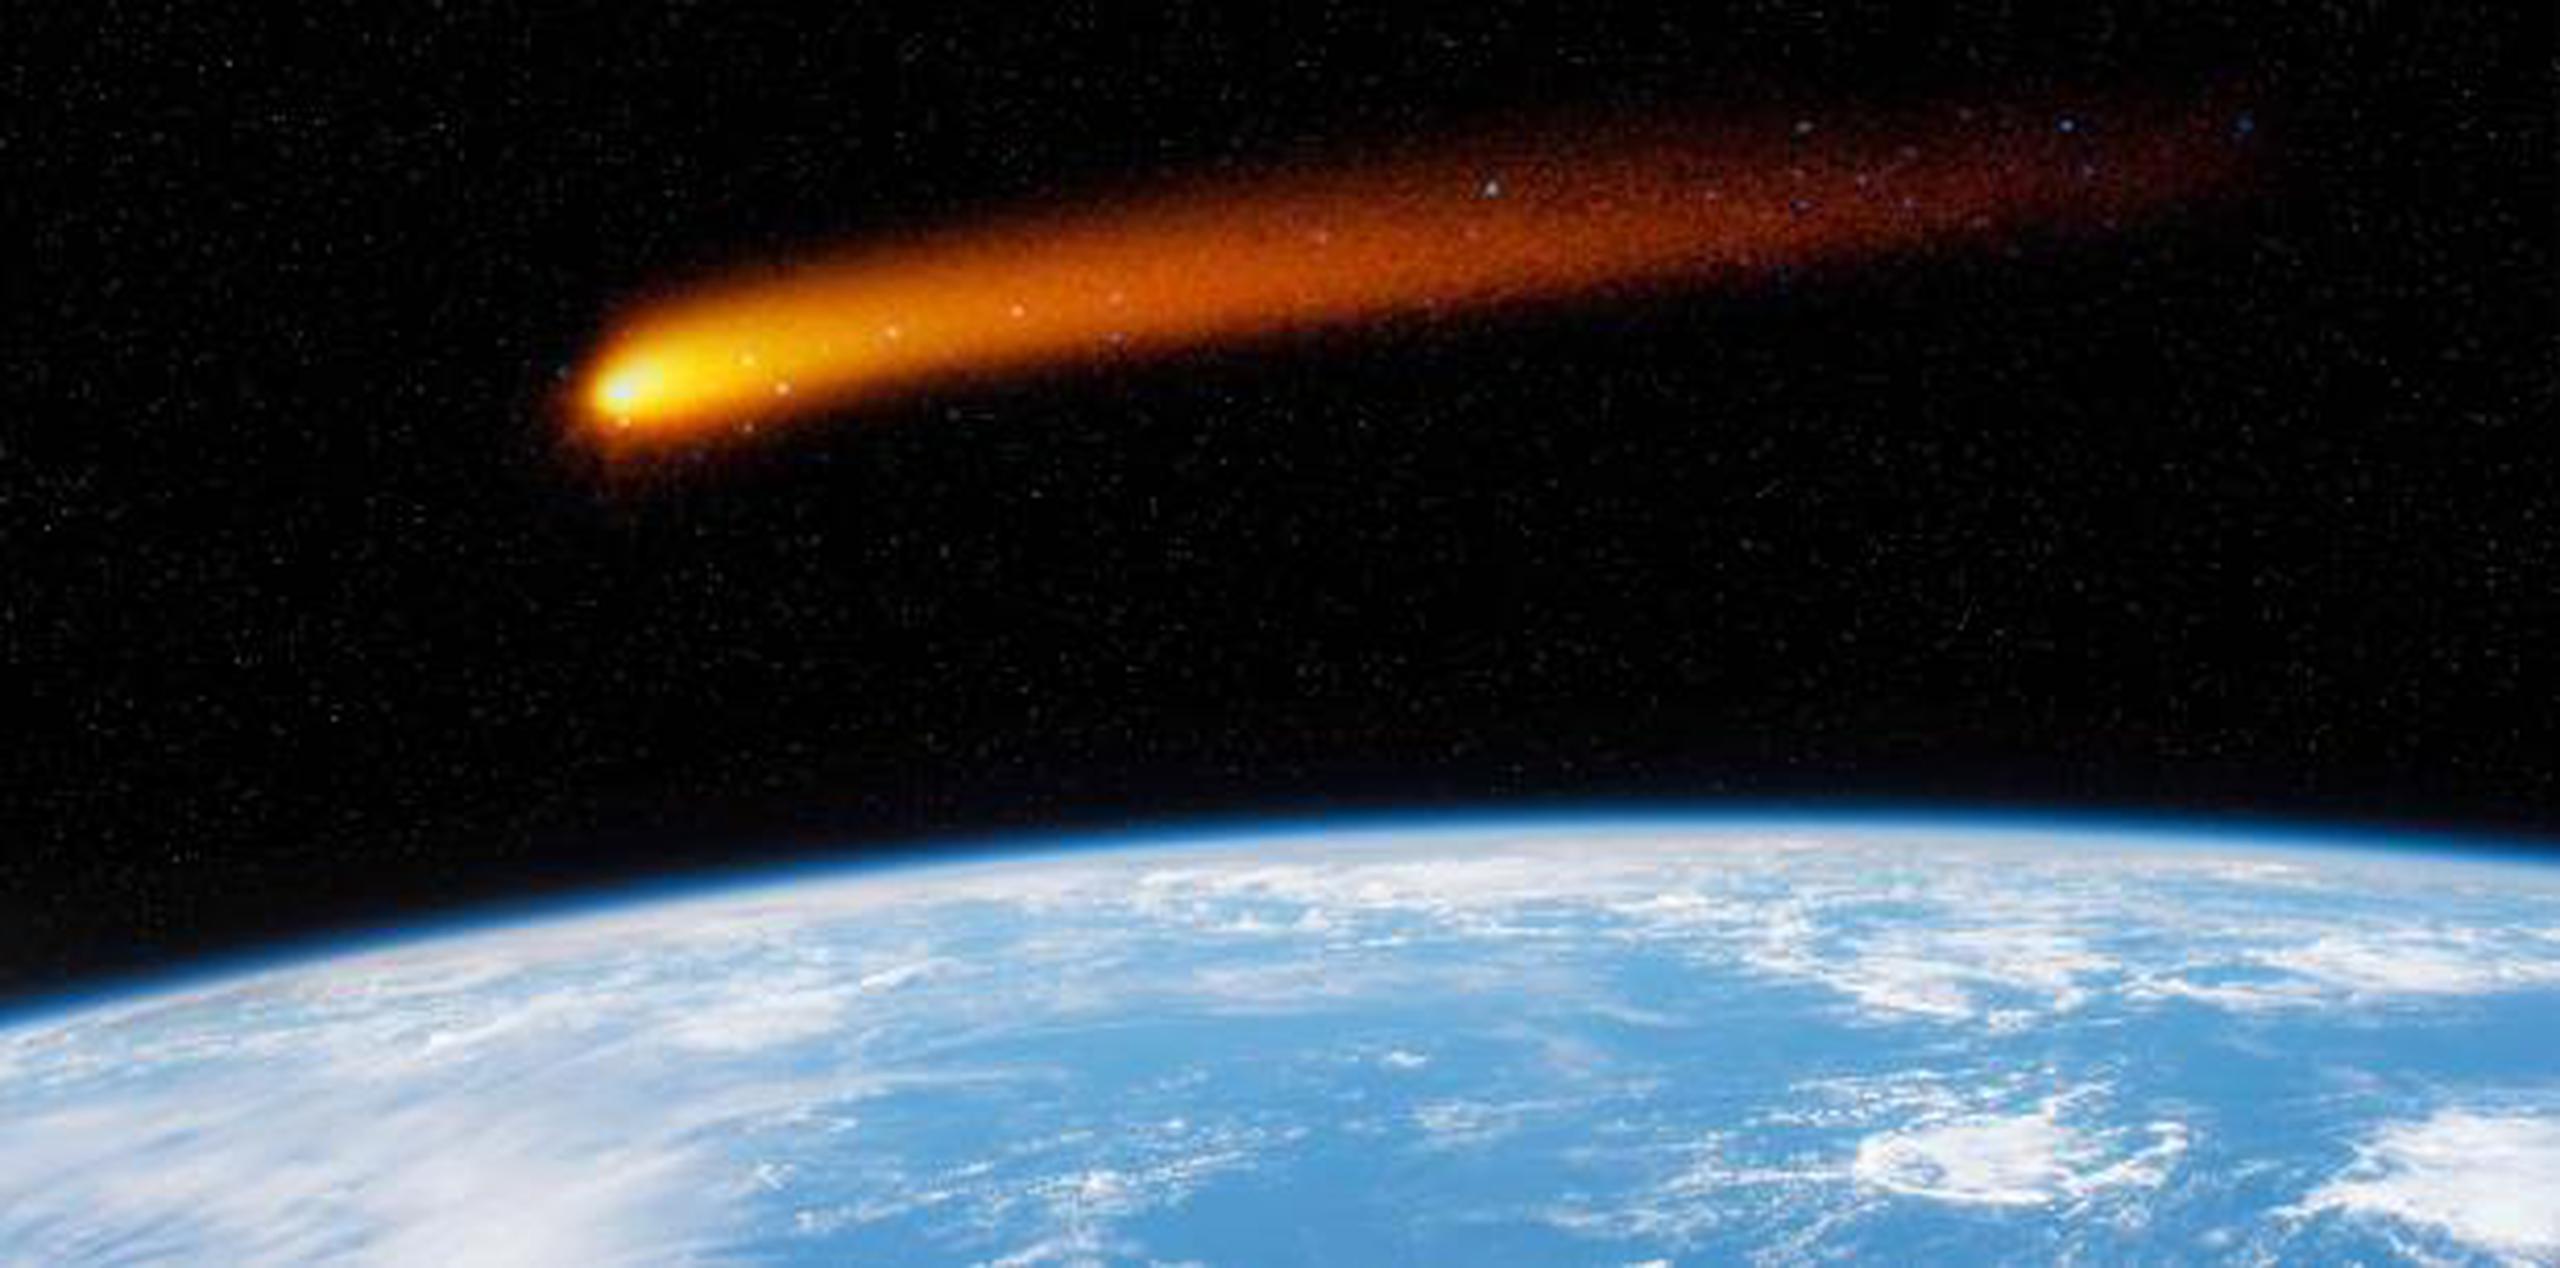 El asteroide pertenece al grupo o tipo "Atenas", una clase de rocas espaciales que orbita entre Venus y la Tierra. (Archivo)